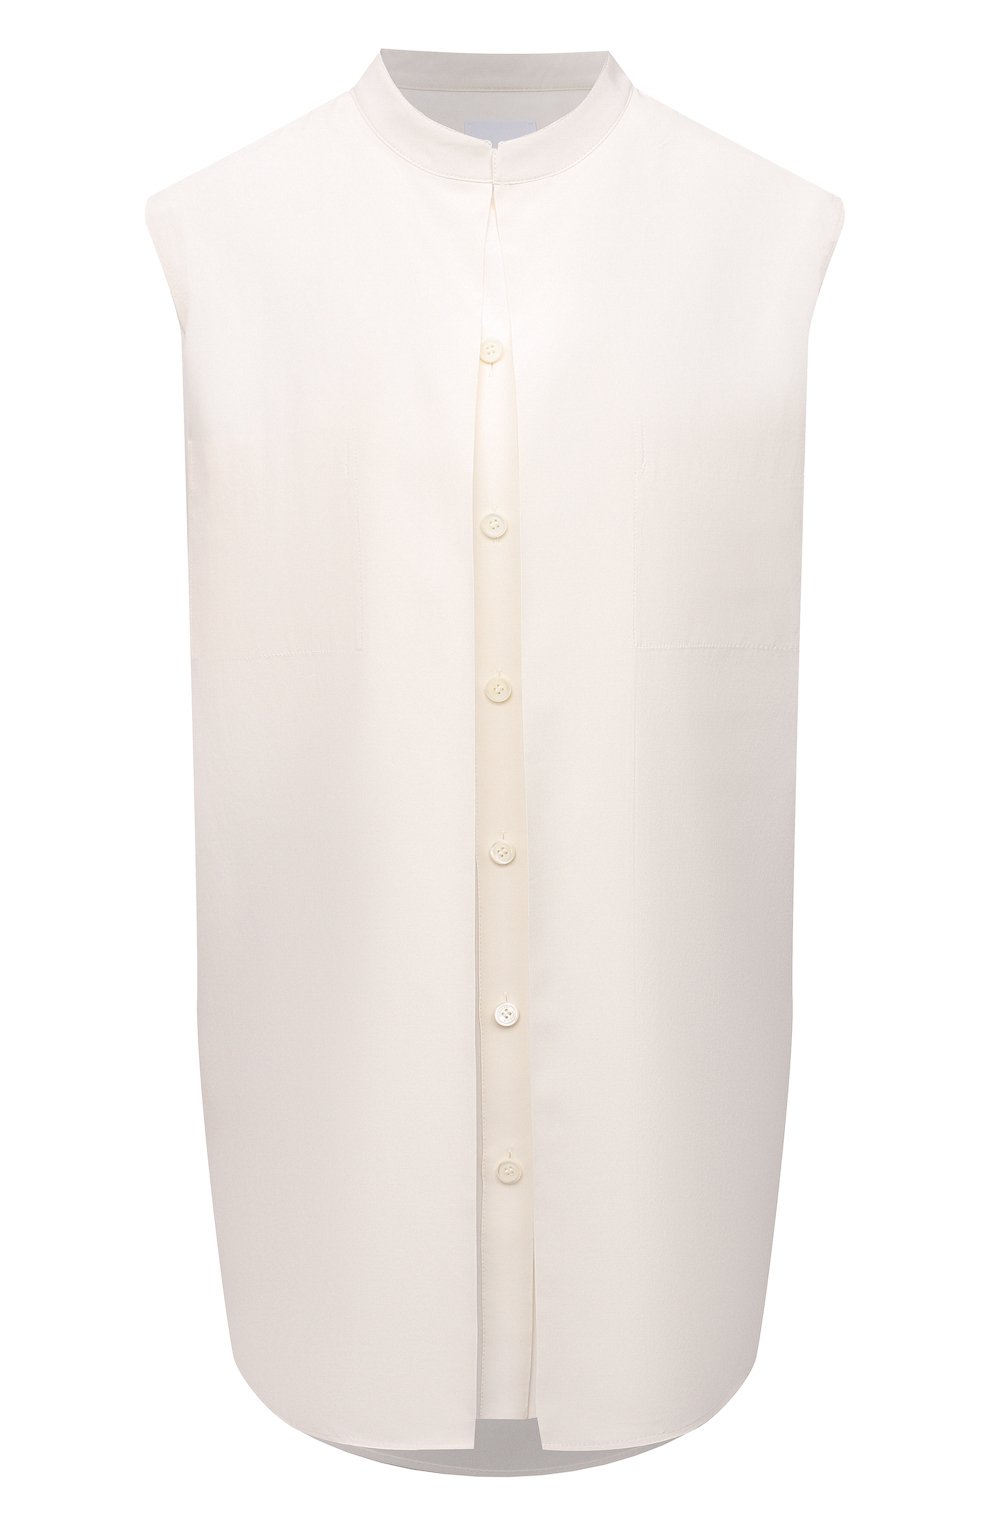 Блузы Burberry, Шелковая блузка Burberry, Италия, Белый, Шелк: 100%; Подкладка-шелк: 100%;, 12317098  - купить